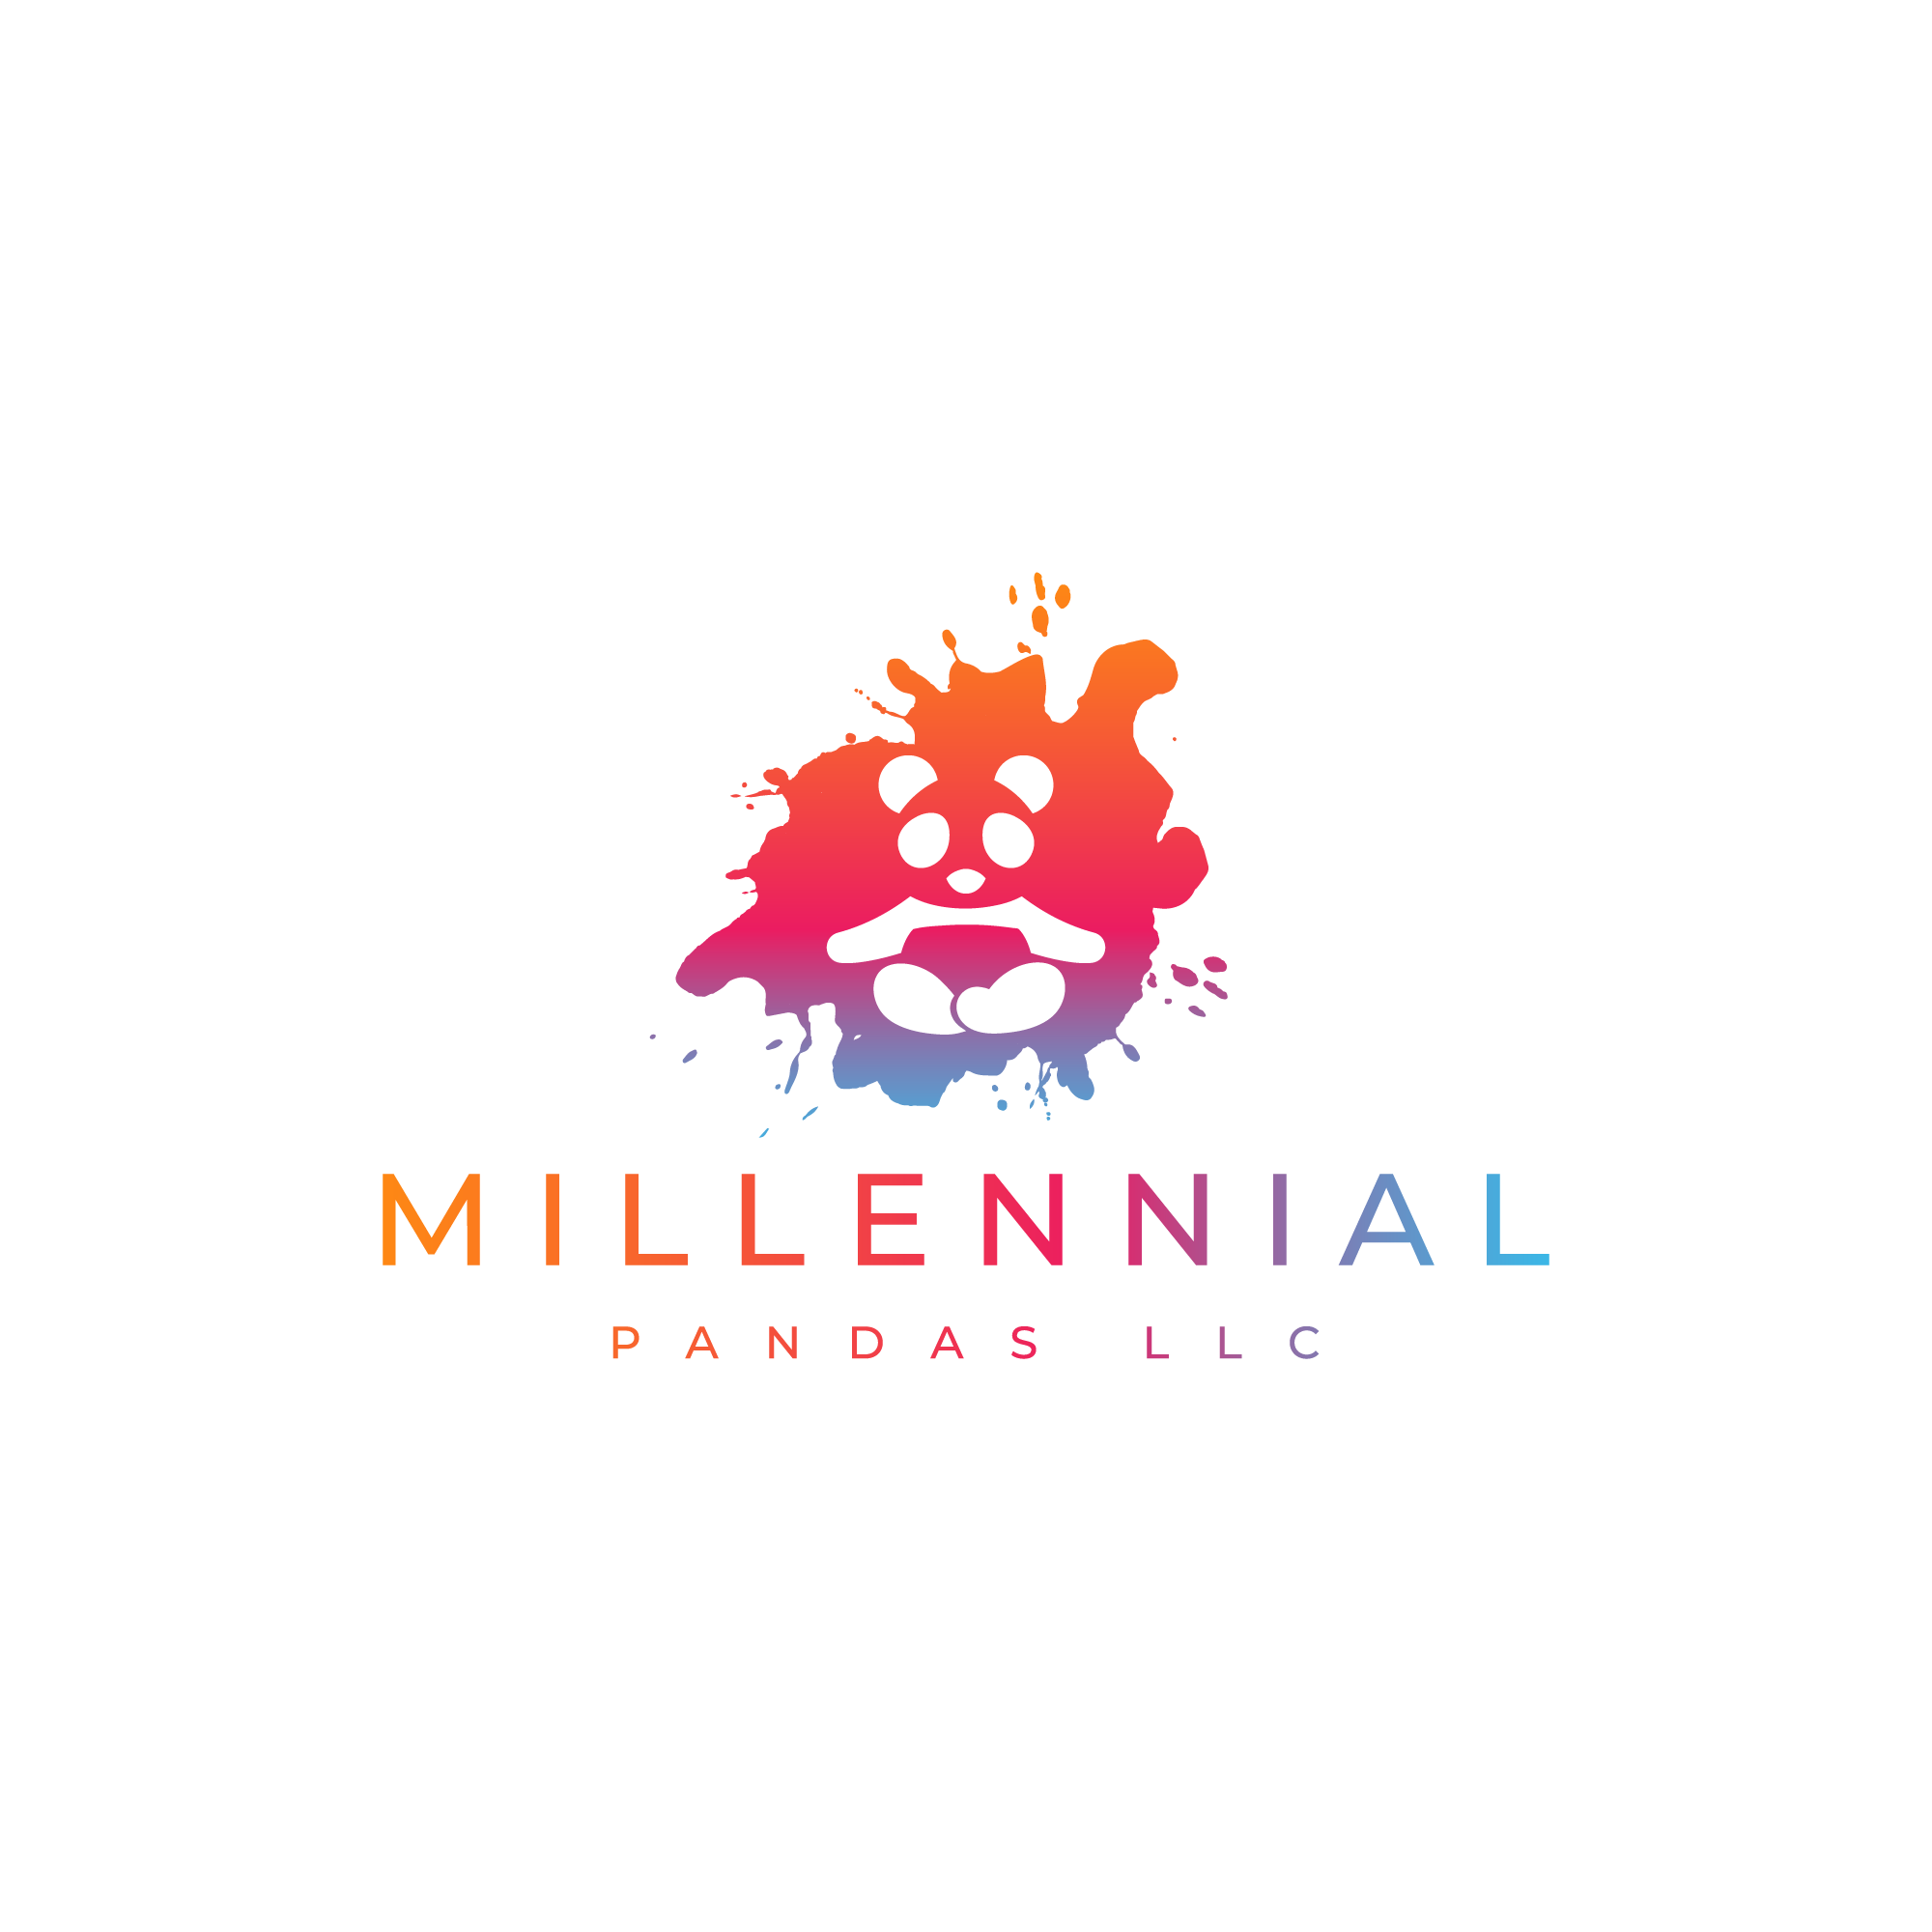 Millennial Pandas